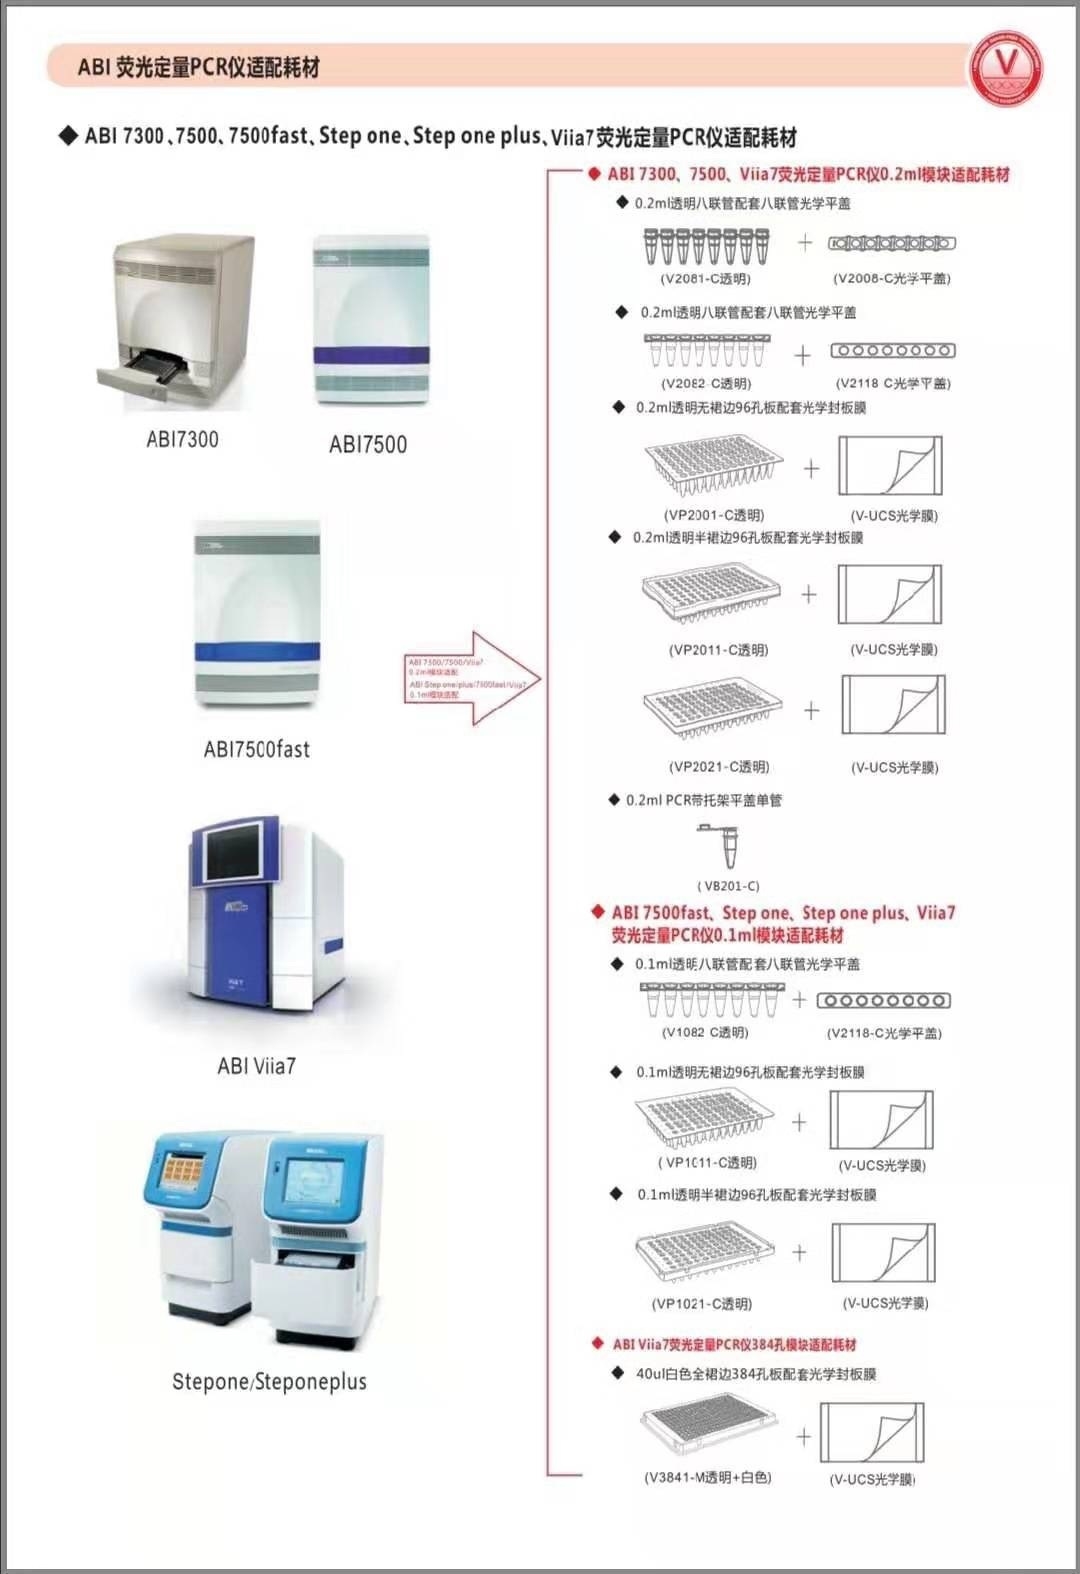 PCR检测8联管0.2ml,荧光定量qPCR八联管V2081-C